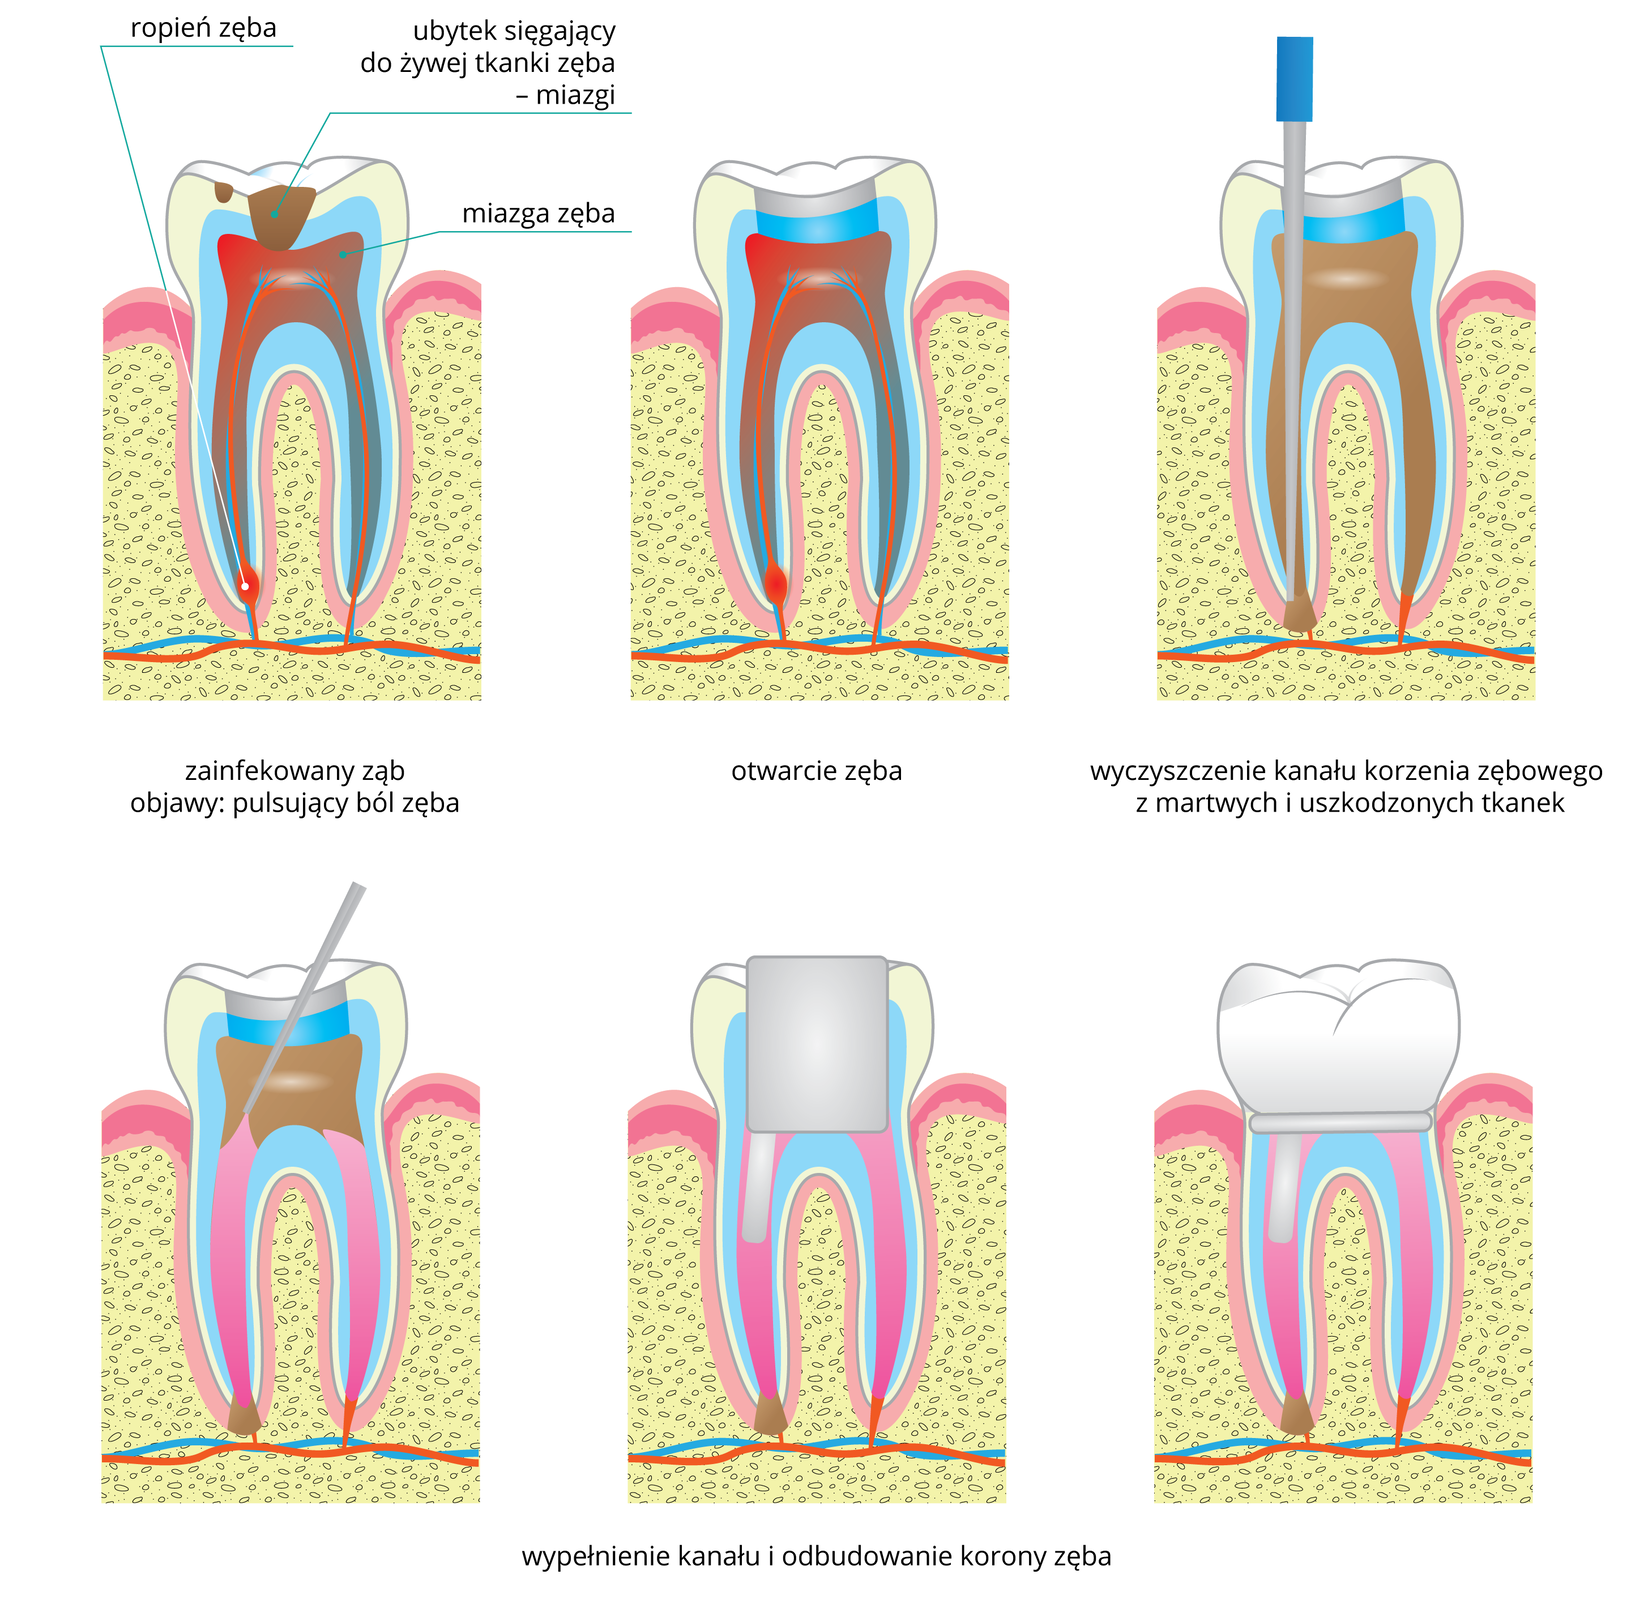 Na ilustracji znajduje się w dwóch rzędach 6 rysunków zęba, przedstawiających kolejne etapy leczenia ropnia. W lewym górnym rogu ukazano zainfekowany ząb. Na szkliwie są brązowe plamki, czyli ubytki. Jeden z nich sięga do żywej tkanki zęba – miazgi. Na czerwono zaznaczono bolesny stan zapalny miazgi, a w lewym korzeniu zęba ropień. Środkowy rysunek przedstawia otwarcie zęba: w koronie zęba dentysta usunął część szkliwa z ubytkami. Następnie do korzenia zęba z ropniem wprowadził szaro – niebieskie narzędzie, którym usunął martwe tkanki. W dolnym rzędzie z lewej przedstawiono na różowo wypełnienie kanału zęba, w następnym szarym czworokątem oznaczono odbudowanie korony zęba. Ostatni rysunek przedstawia wyleczony ząb.